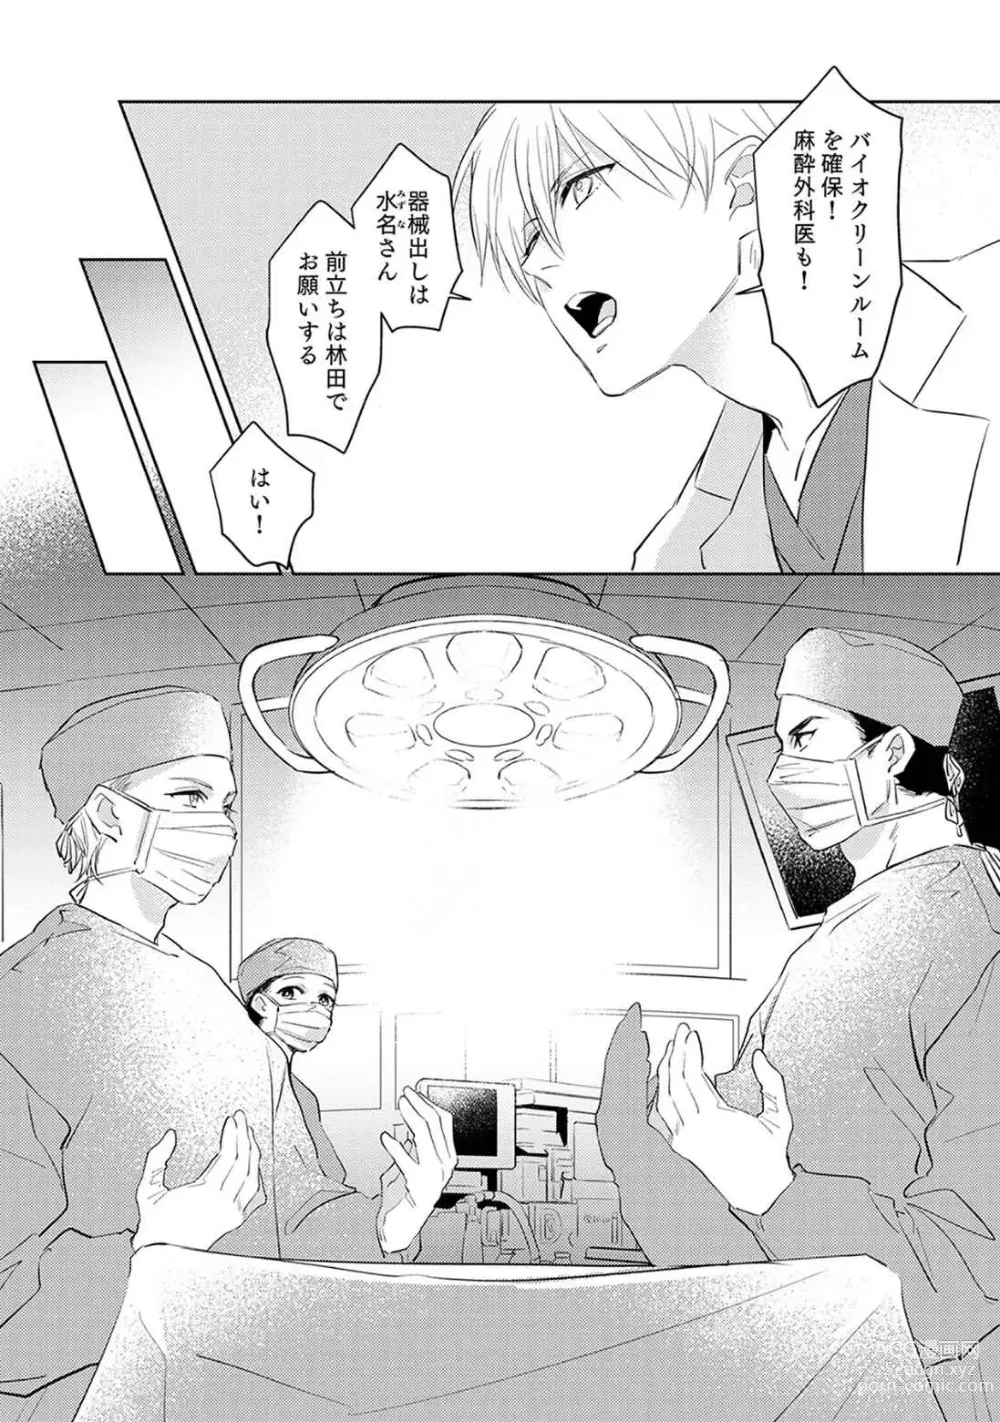 Page 9 of manga First Call 1 ~Doutei Gekai Toshishita Yazuka no Yome ni Sare Sou desu!~